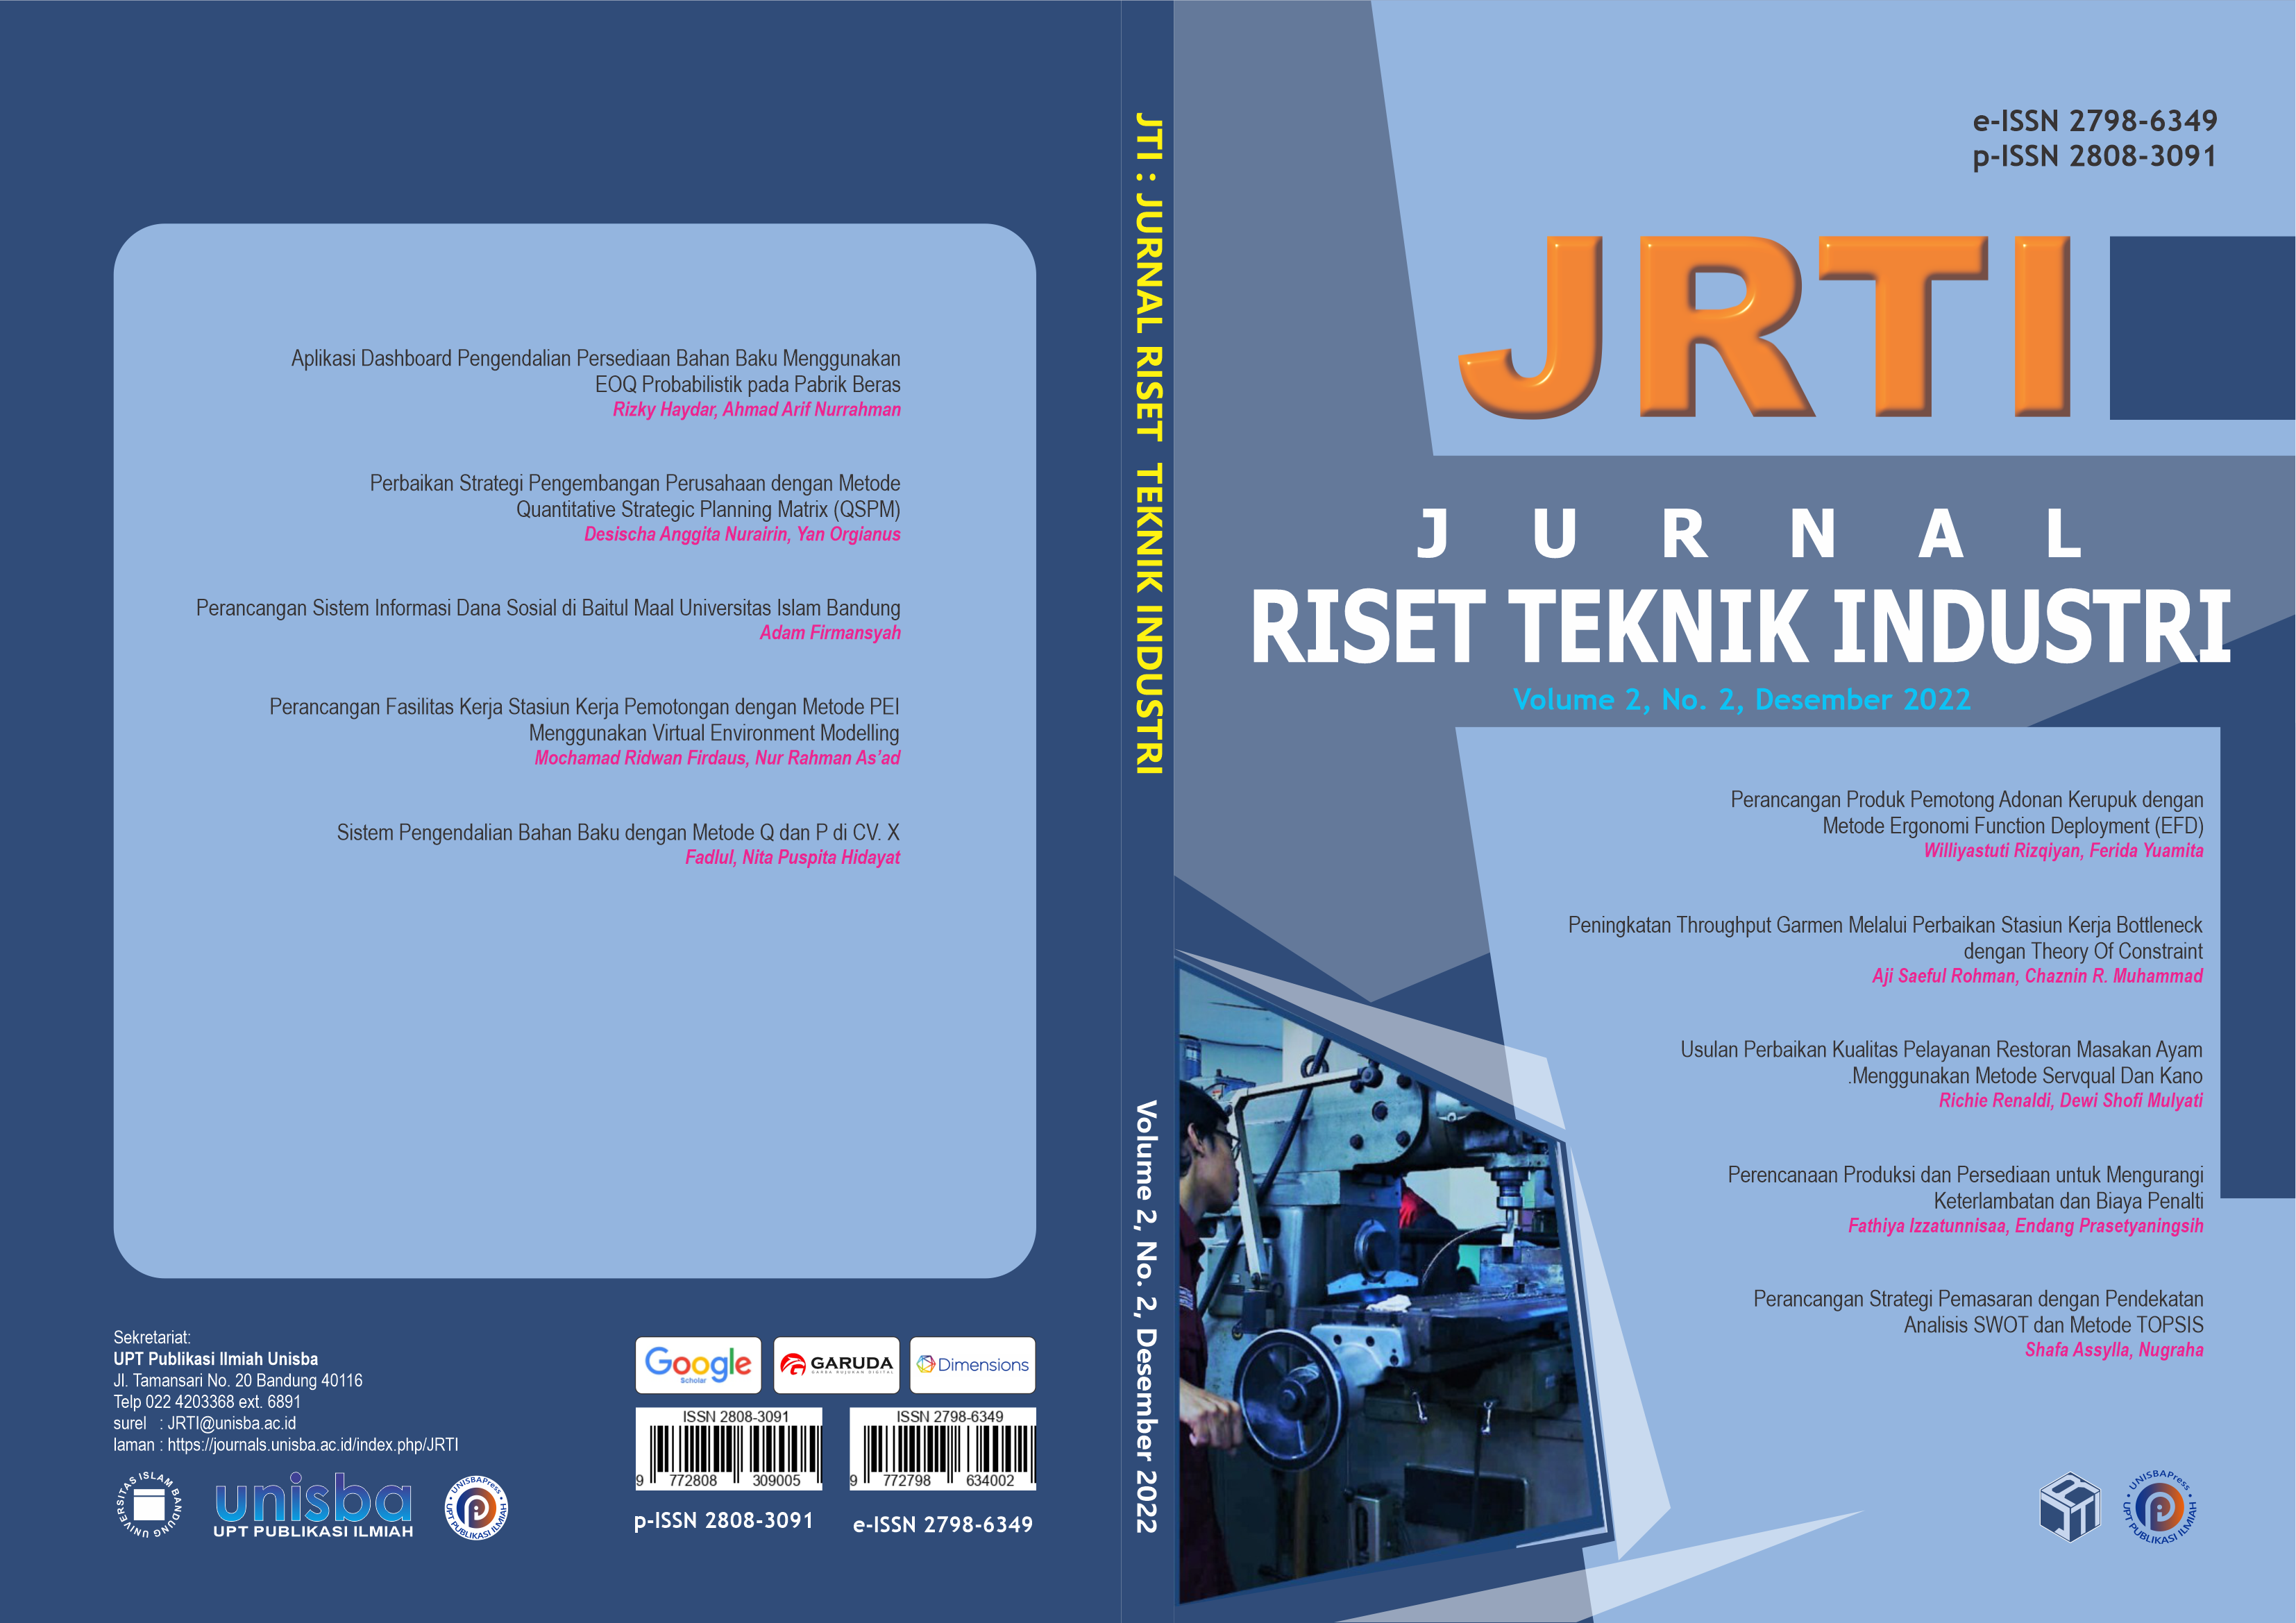 					View Volume 2, No. 2, Desember 2022, Jurnal Riset Teknik Industri (JRTI)
				